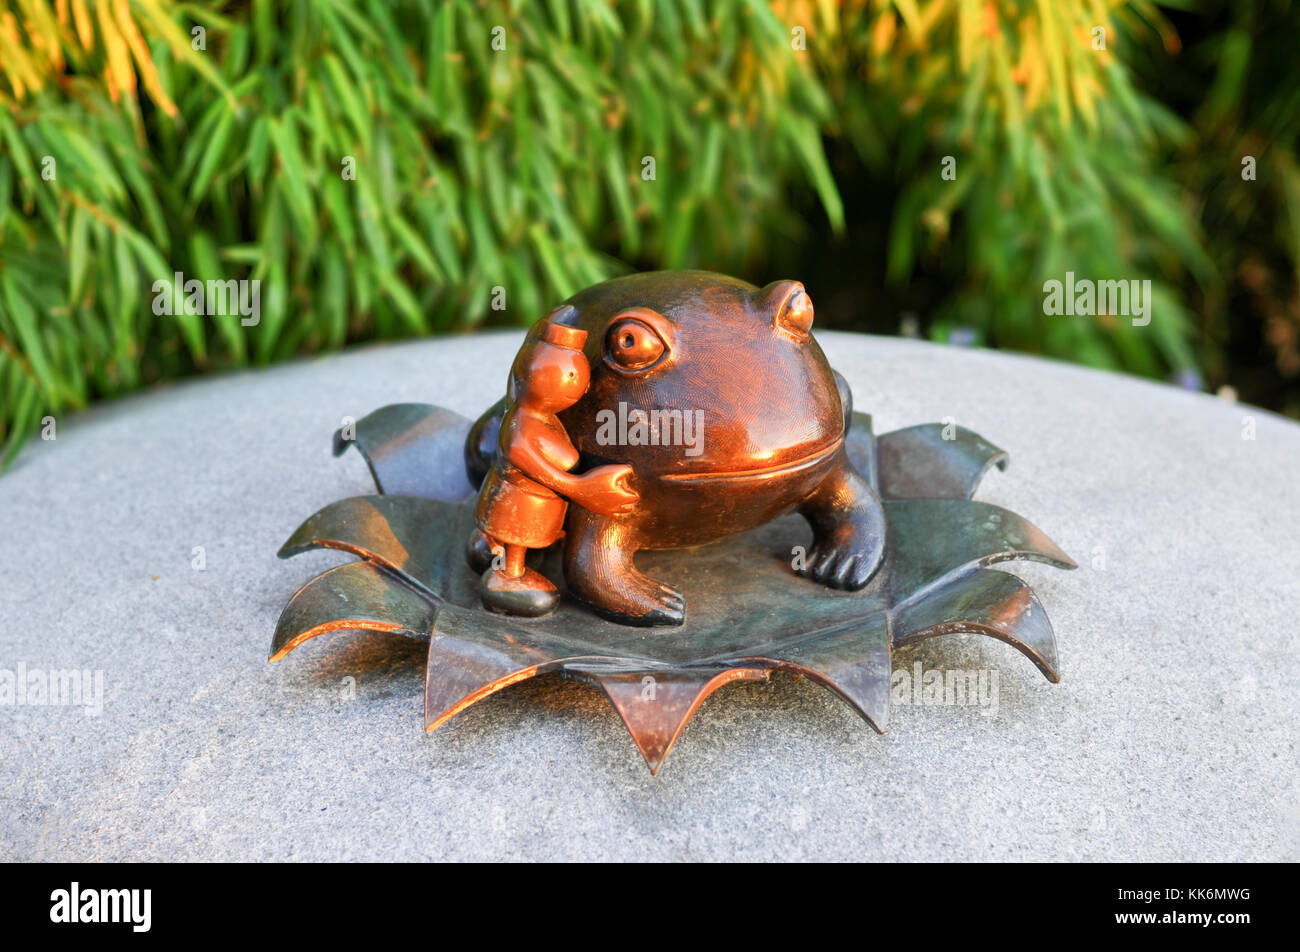 Petite grenouille sculpture dans Battery Park City : Nelson a. rockefeller park - le monde réel. Banque D'Images